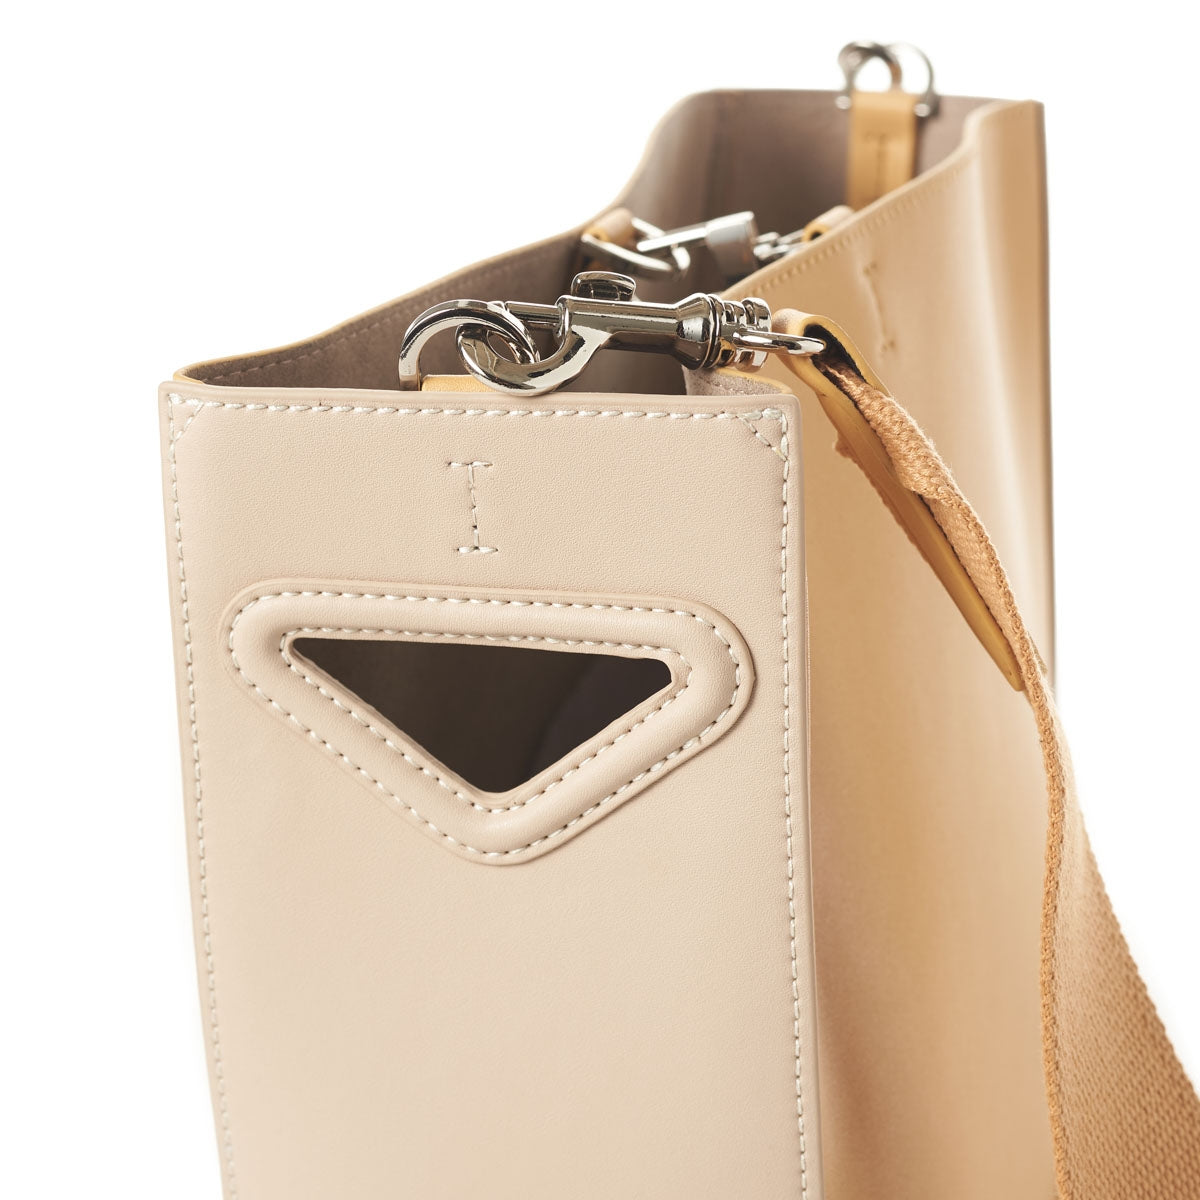 Smooth Leather Shoulder Bag (Bucket Design)